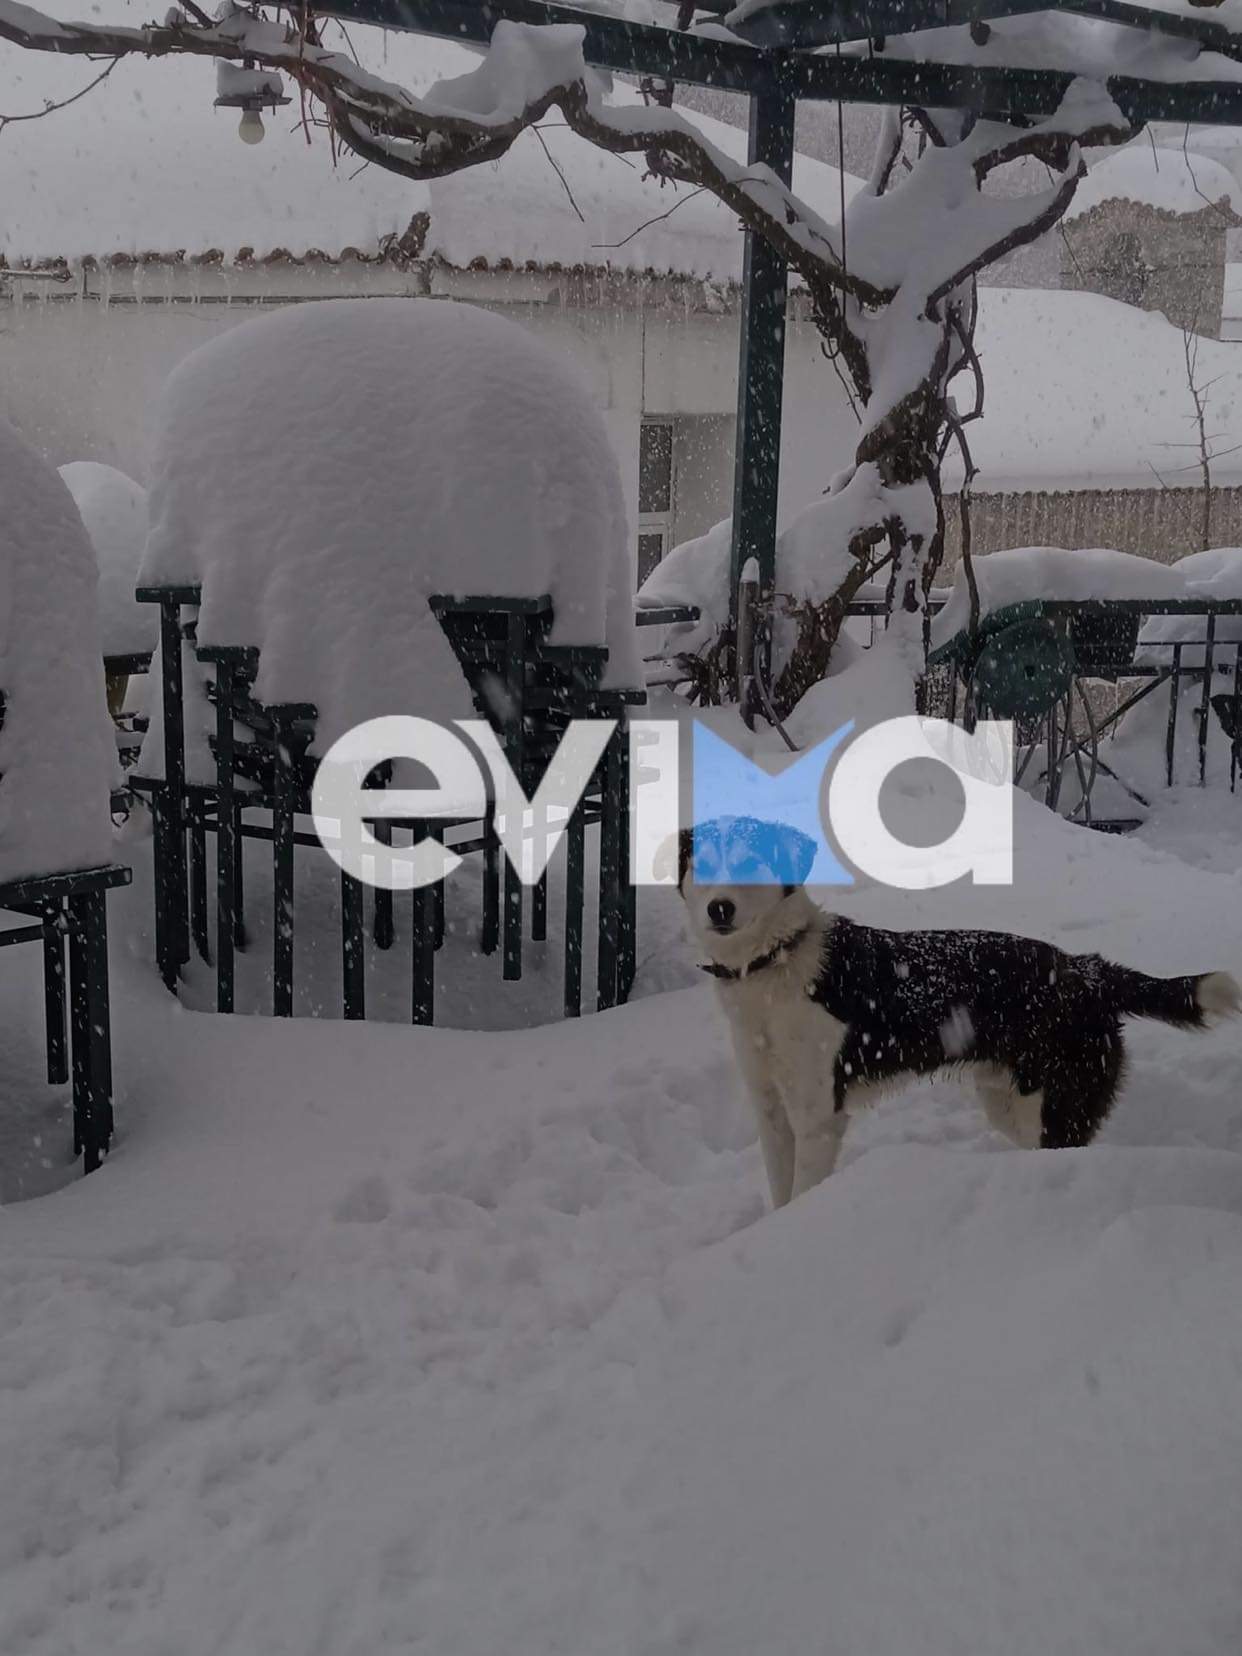 Κακοκαιρία «Φίλιππος»: «Το χιόνι έφτασε το 1.50 μέτρο στη Σέτα», λέει η πρόεδρος της Κοινότητας (pic&vid)